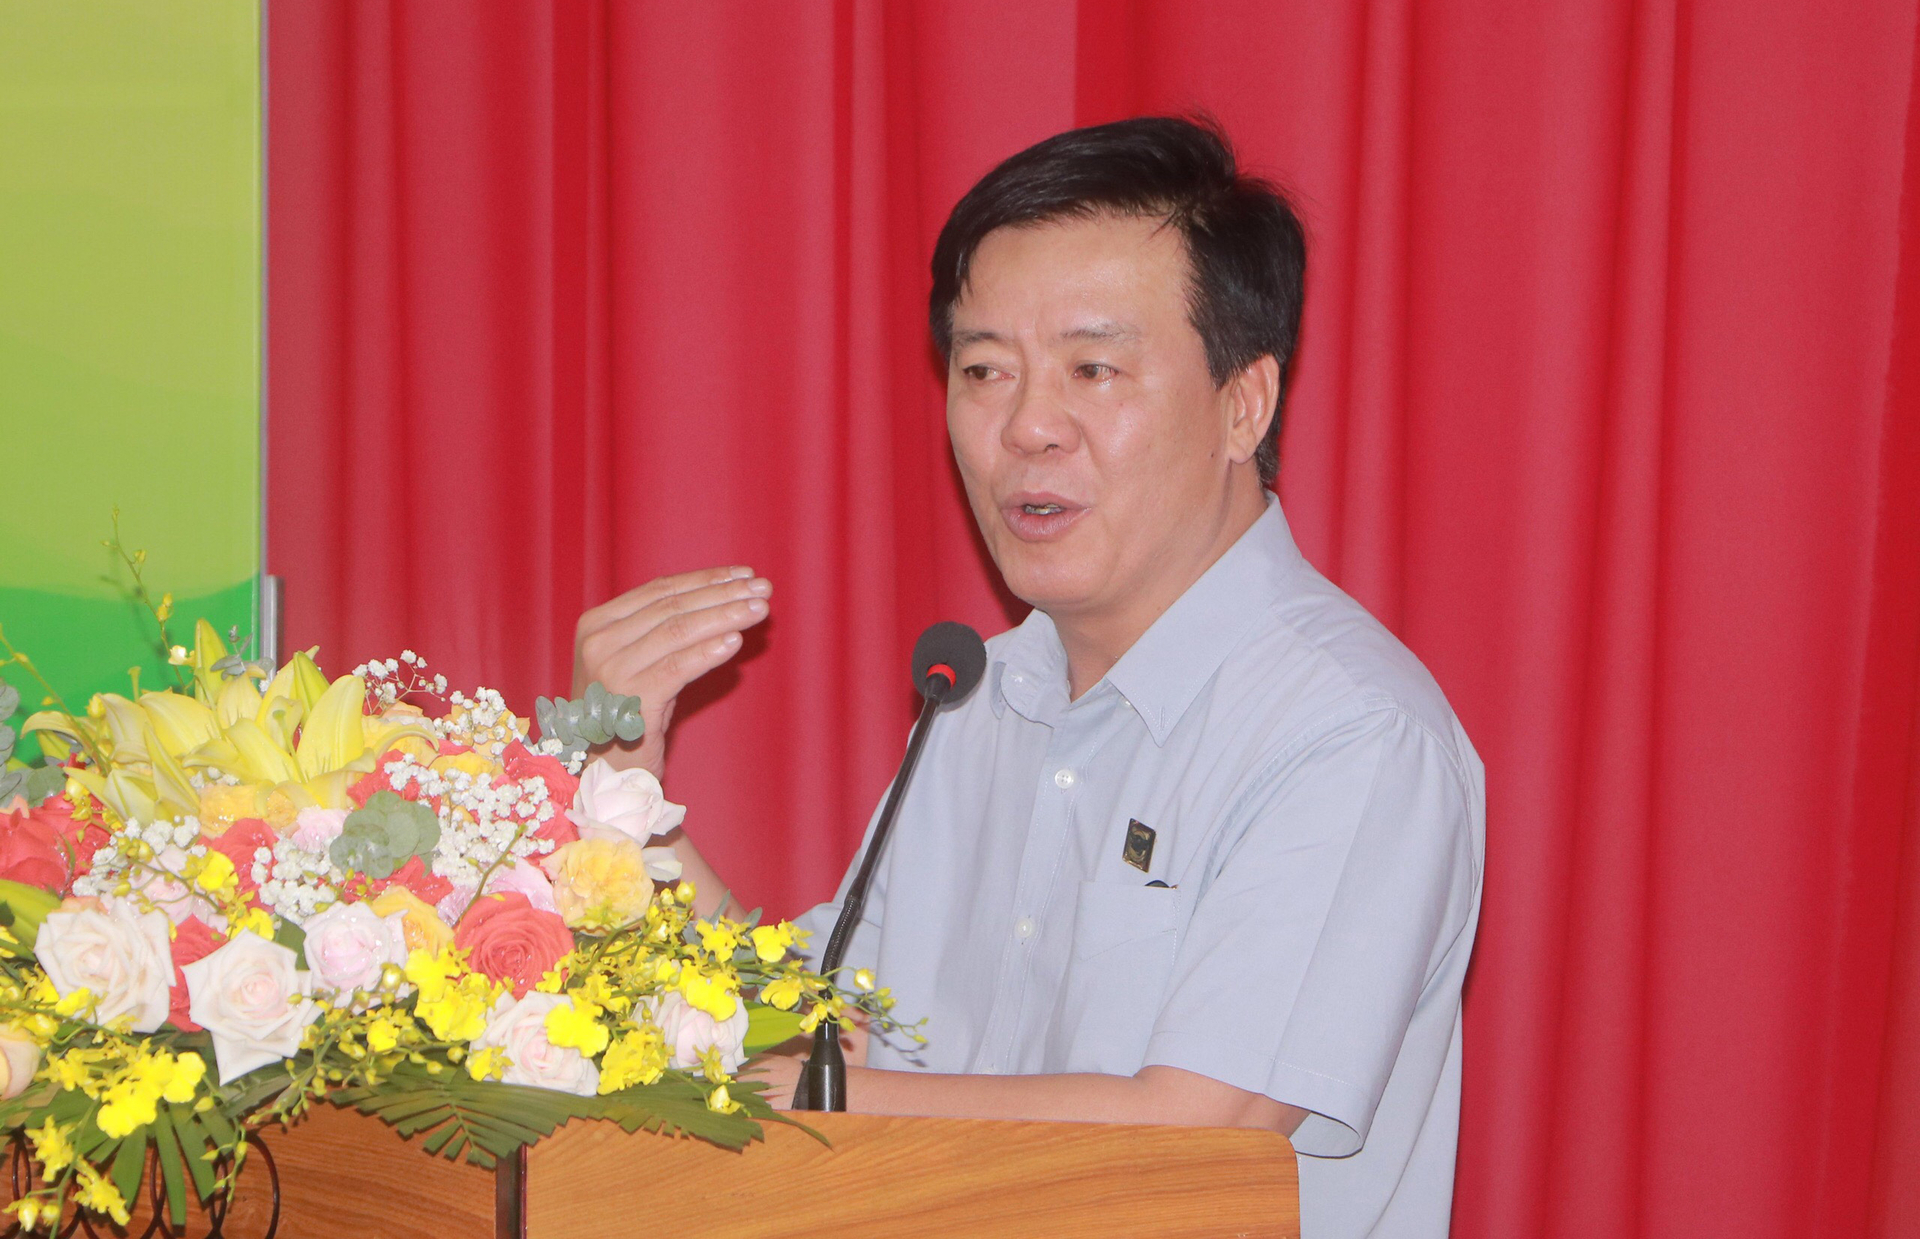 Ông Ngô Văn Đông, Tổng giám đốc Công ty Cổ phần Phân bón Bình Điền cho biết, mục tiêu cuối cùng của chương trình là nâng cao đời sống người dân. Ảnh: Quang Yên.